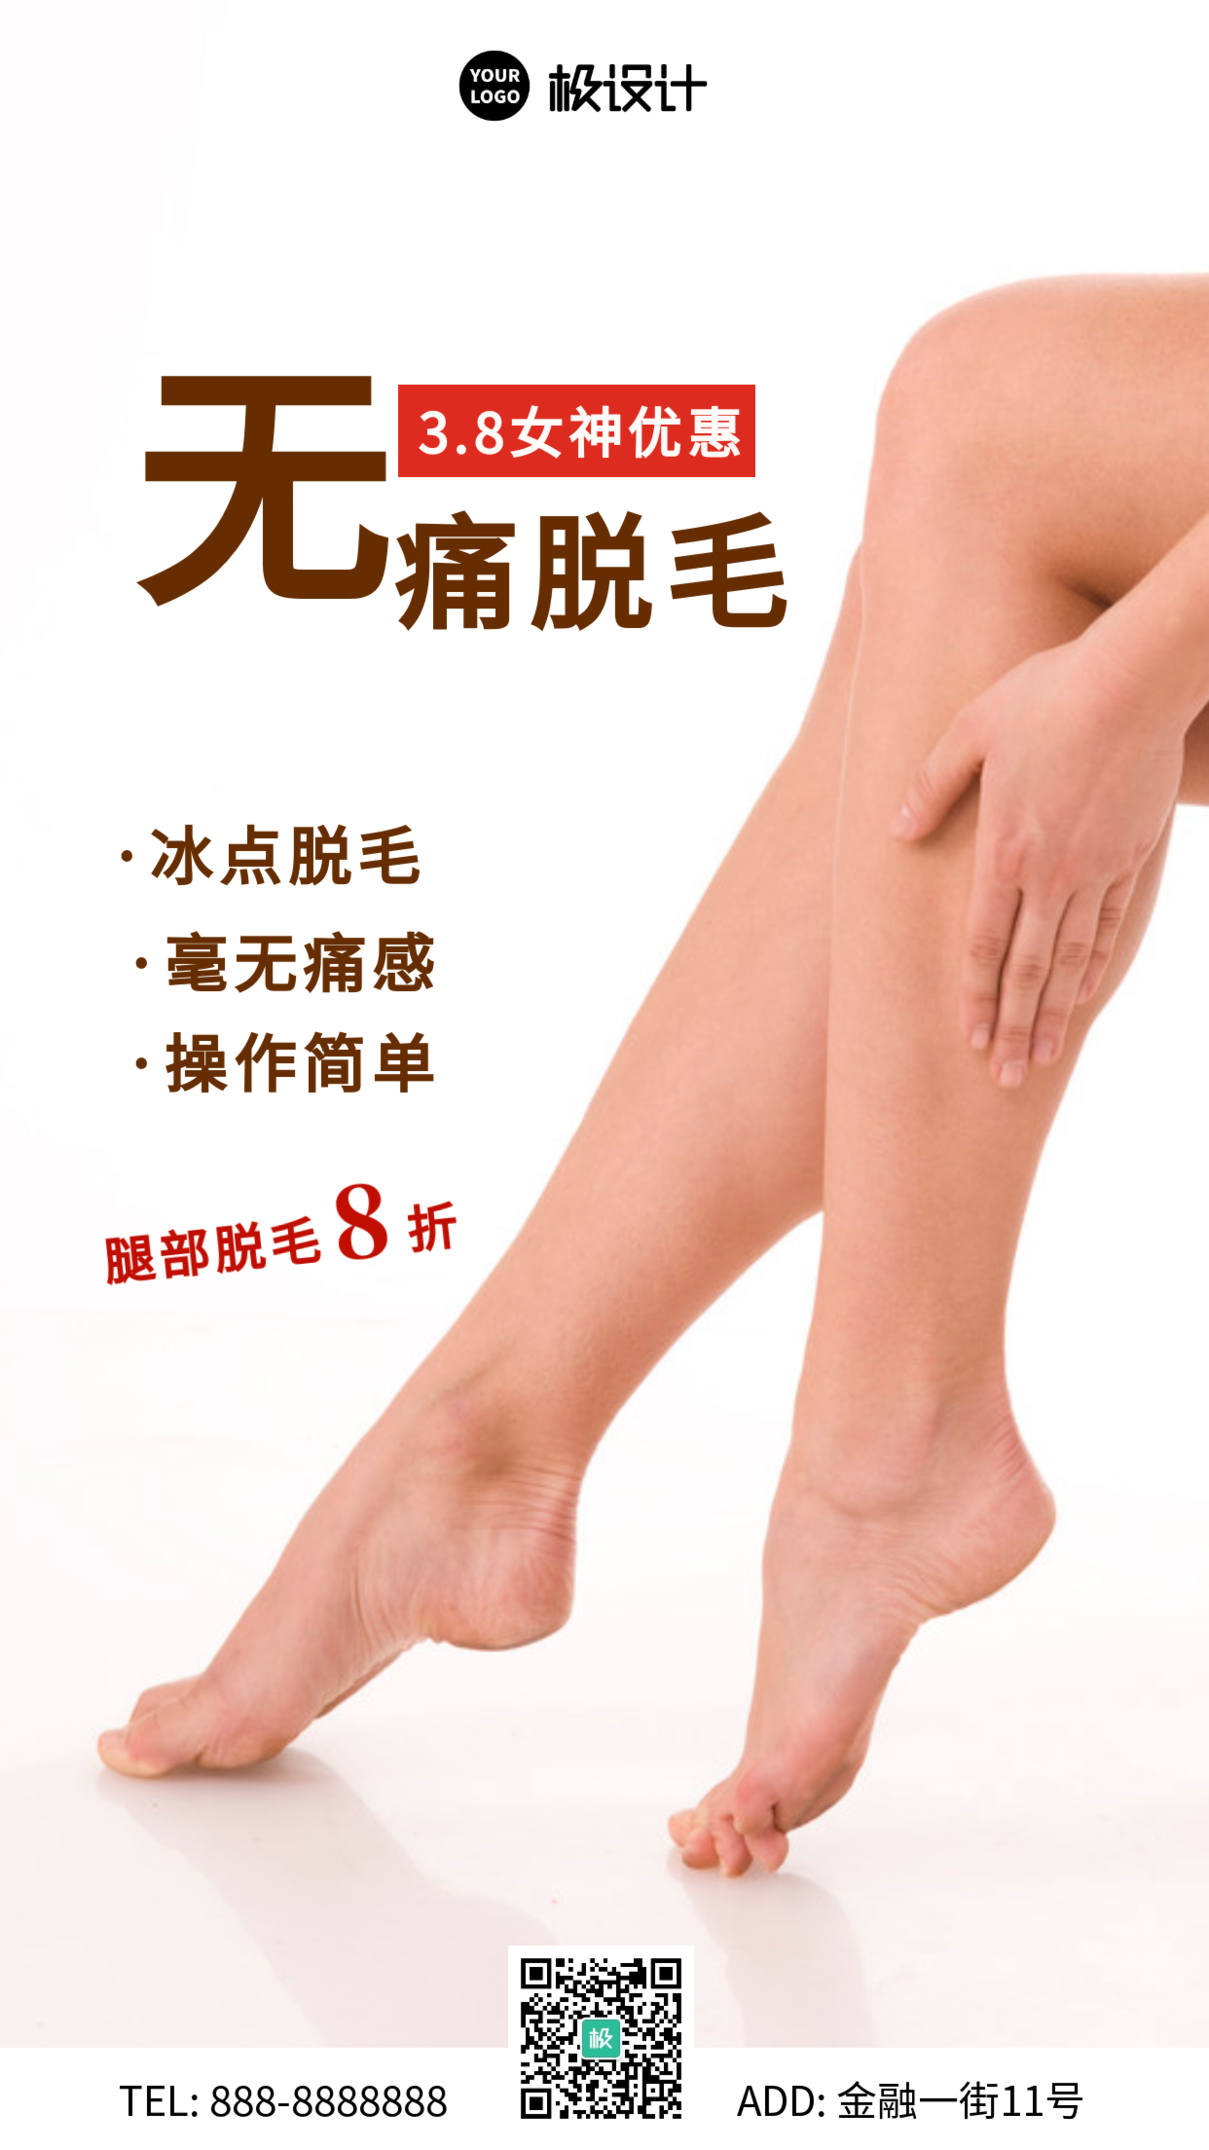 3.8妇女节美容院腿部脱毛手机营销海报